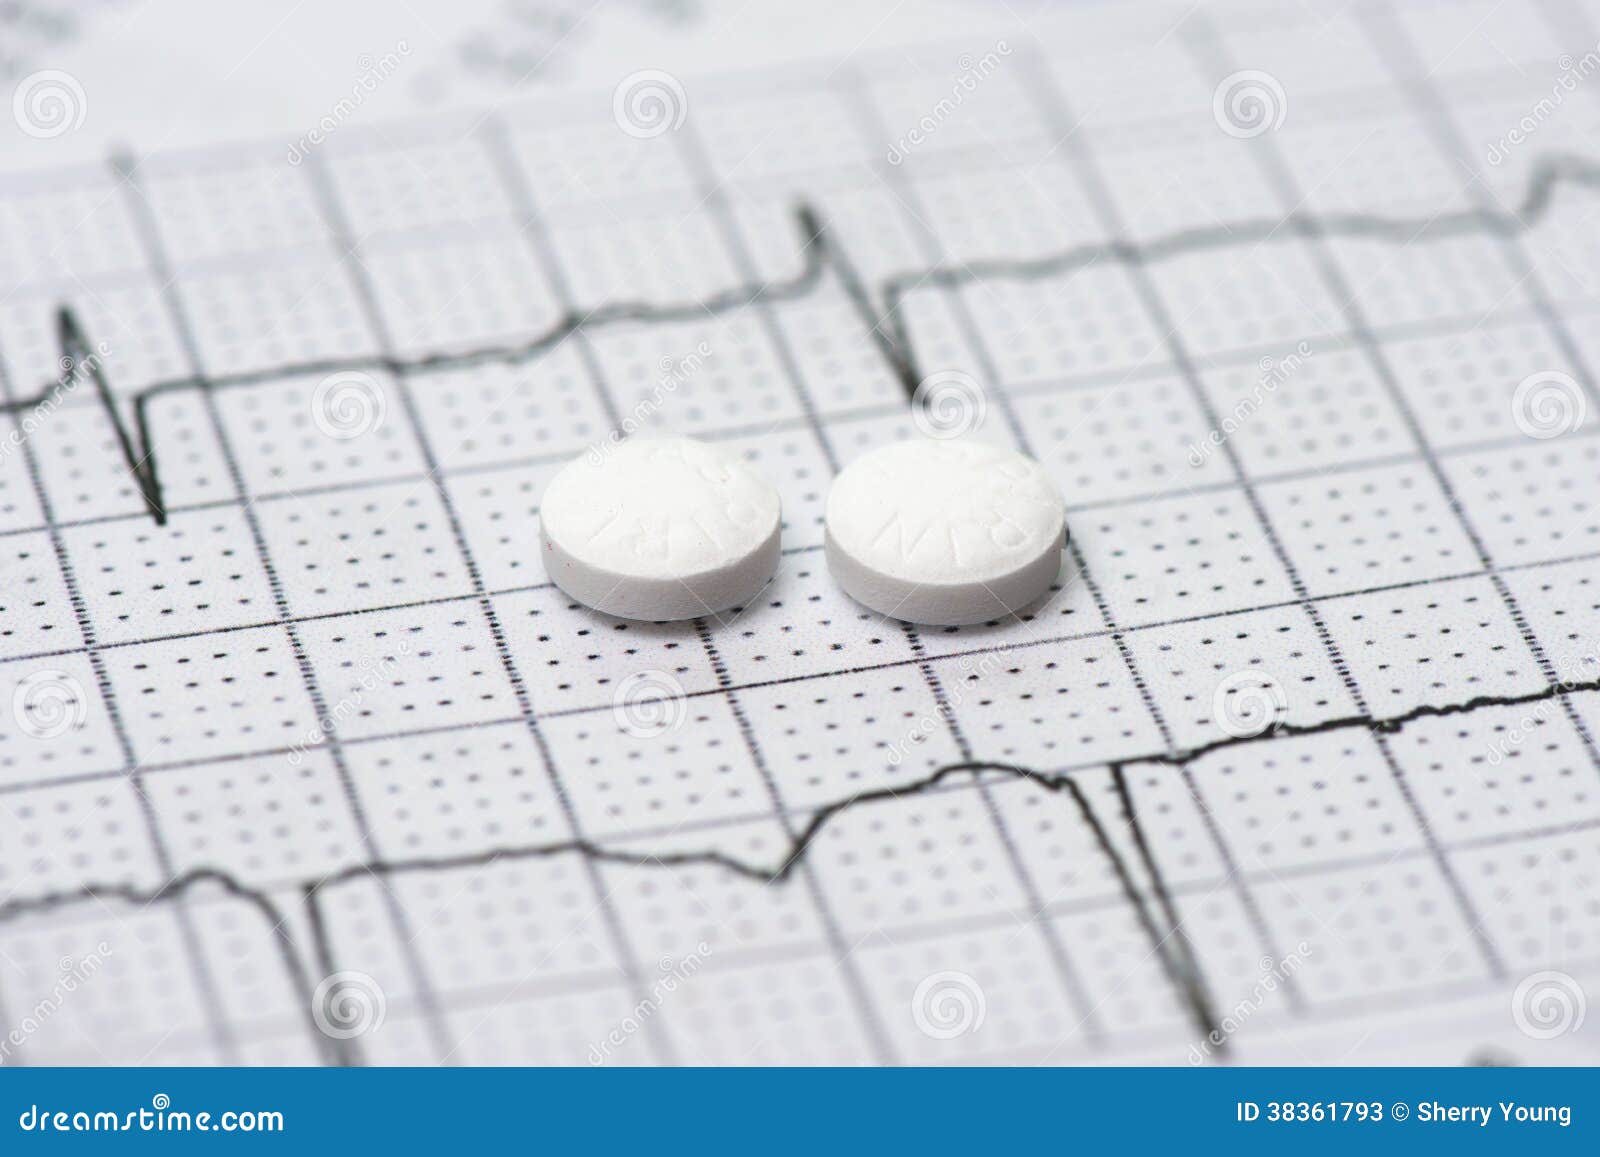 electrocardiograph and aspirin